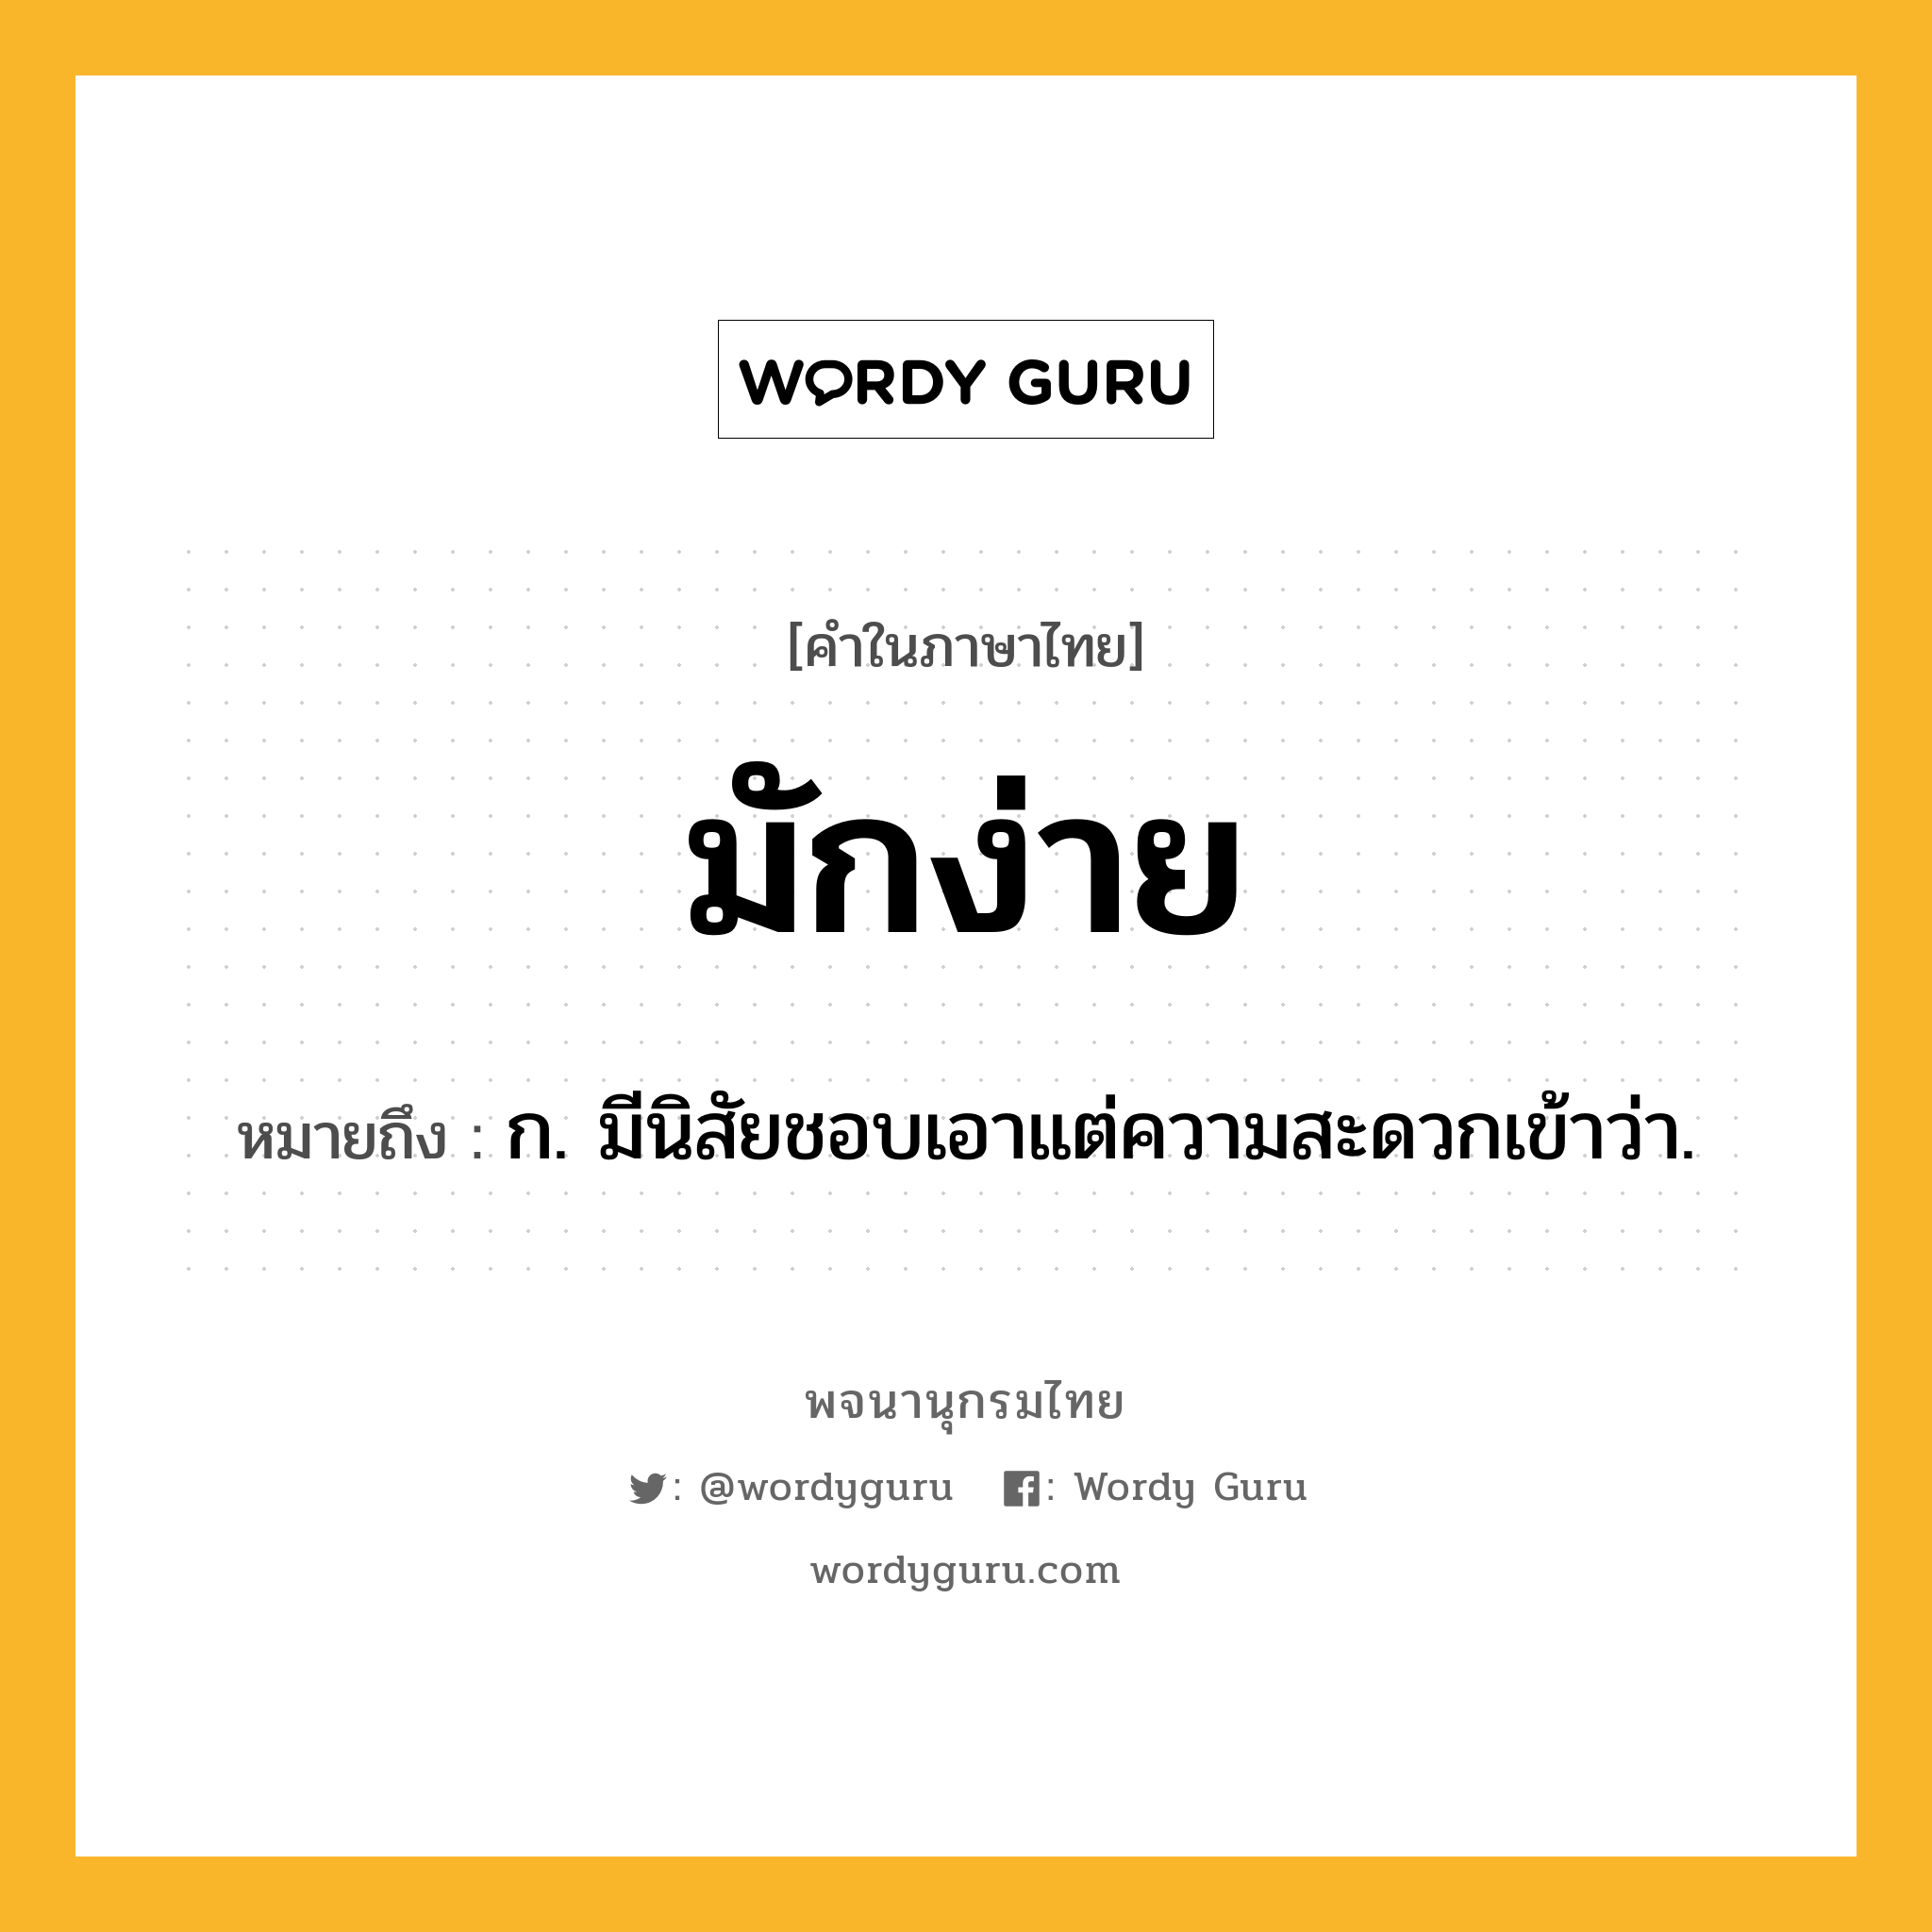 มักง่าย หมายถึงอะไร?, คำในภาษาไทย มักง่าย หมายถึง ก. มีนิสัยชอบเอาแต่ความสะดวกเข้าว่า.